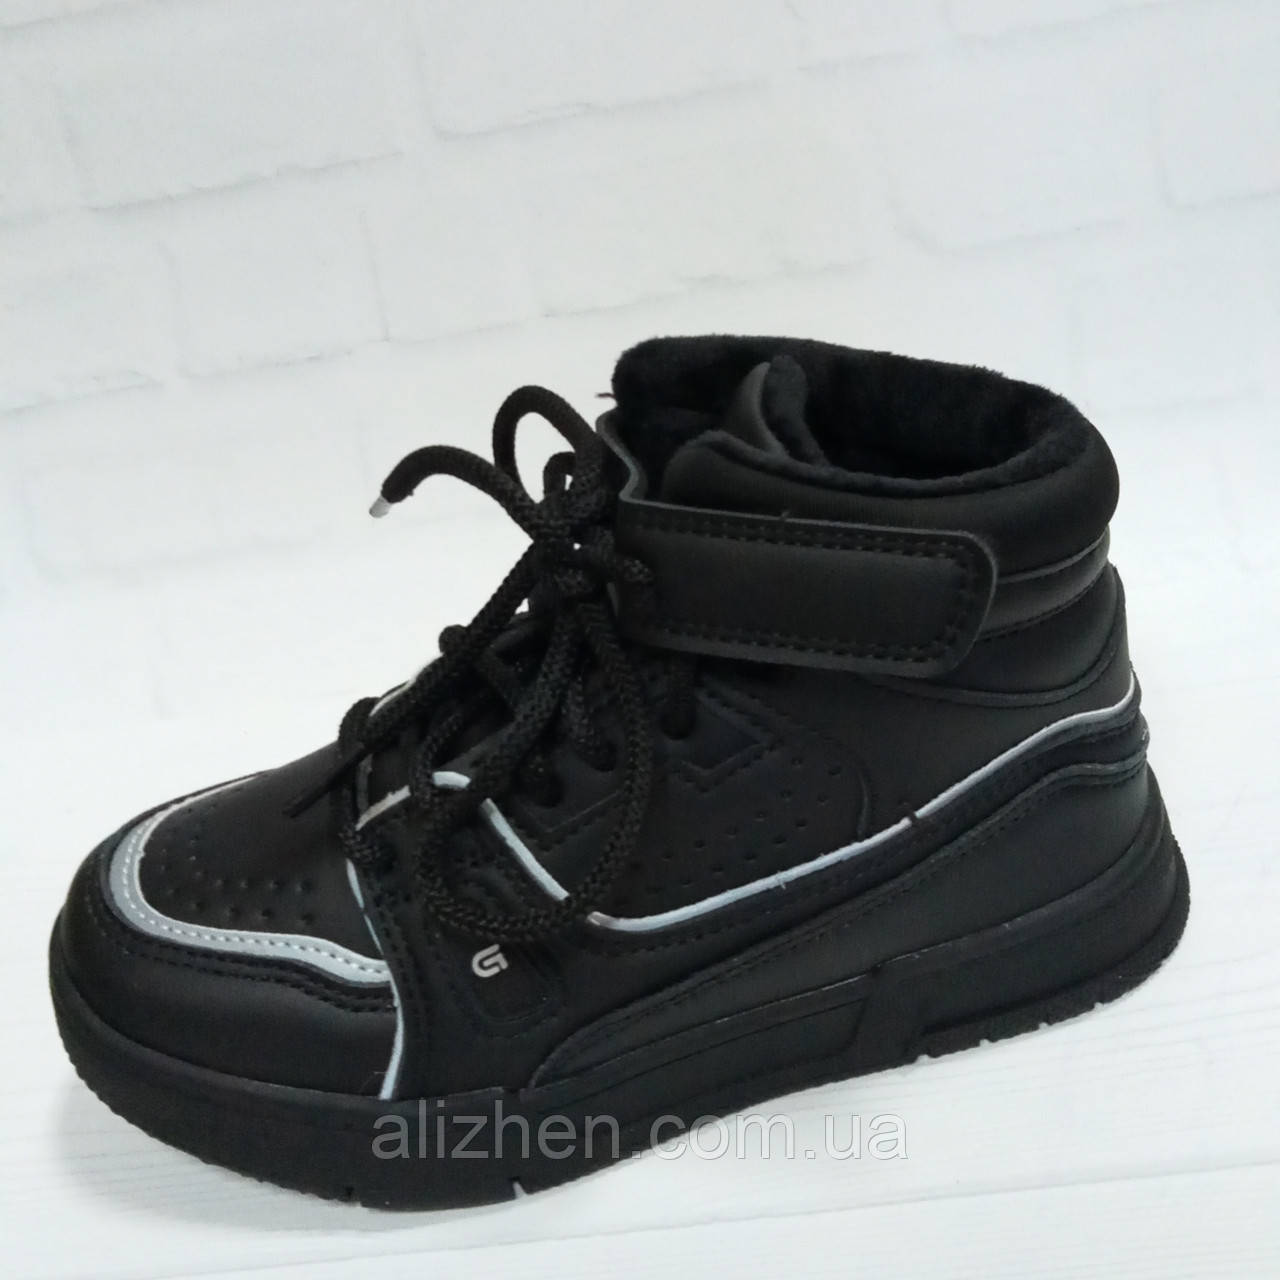 Демісезонні черевички для хлопчика тм Jong Golf , розміри 31 - 36,чорні.